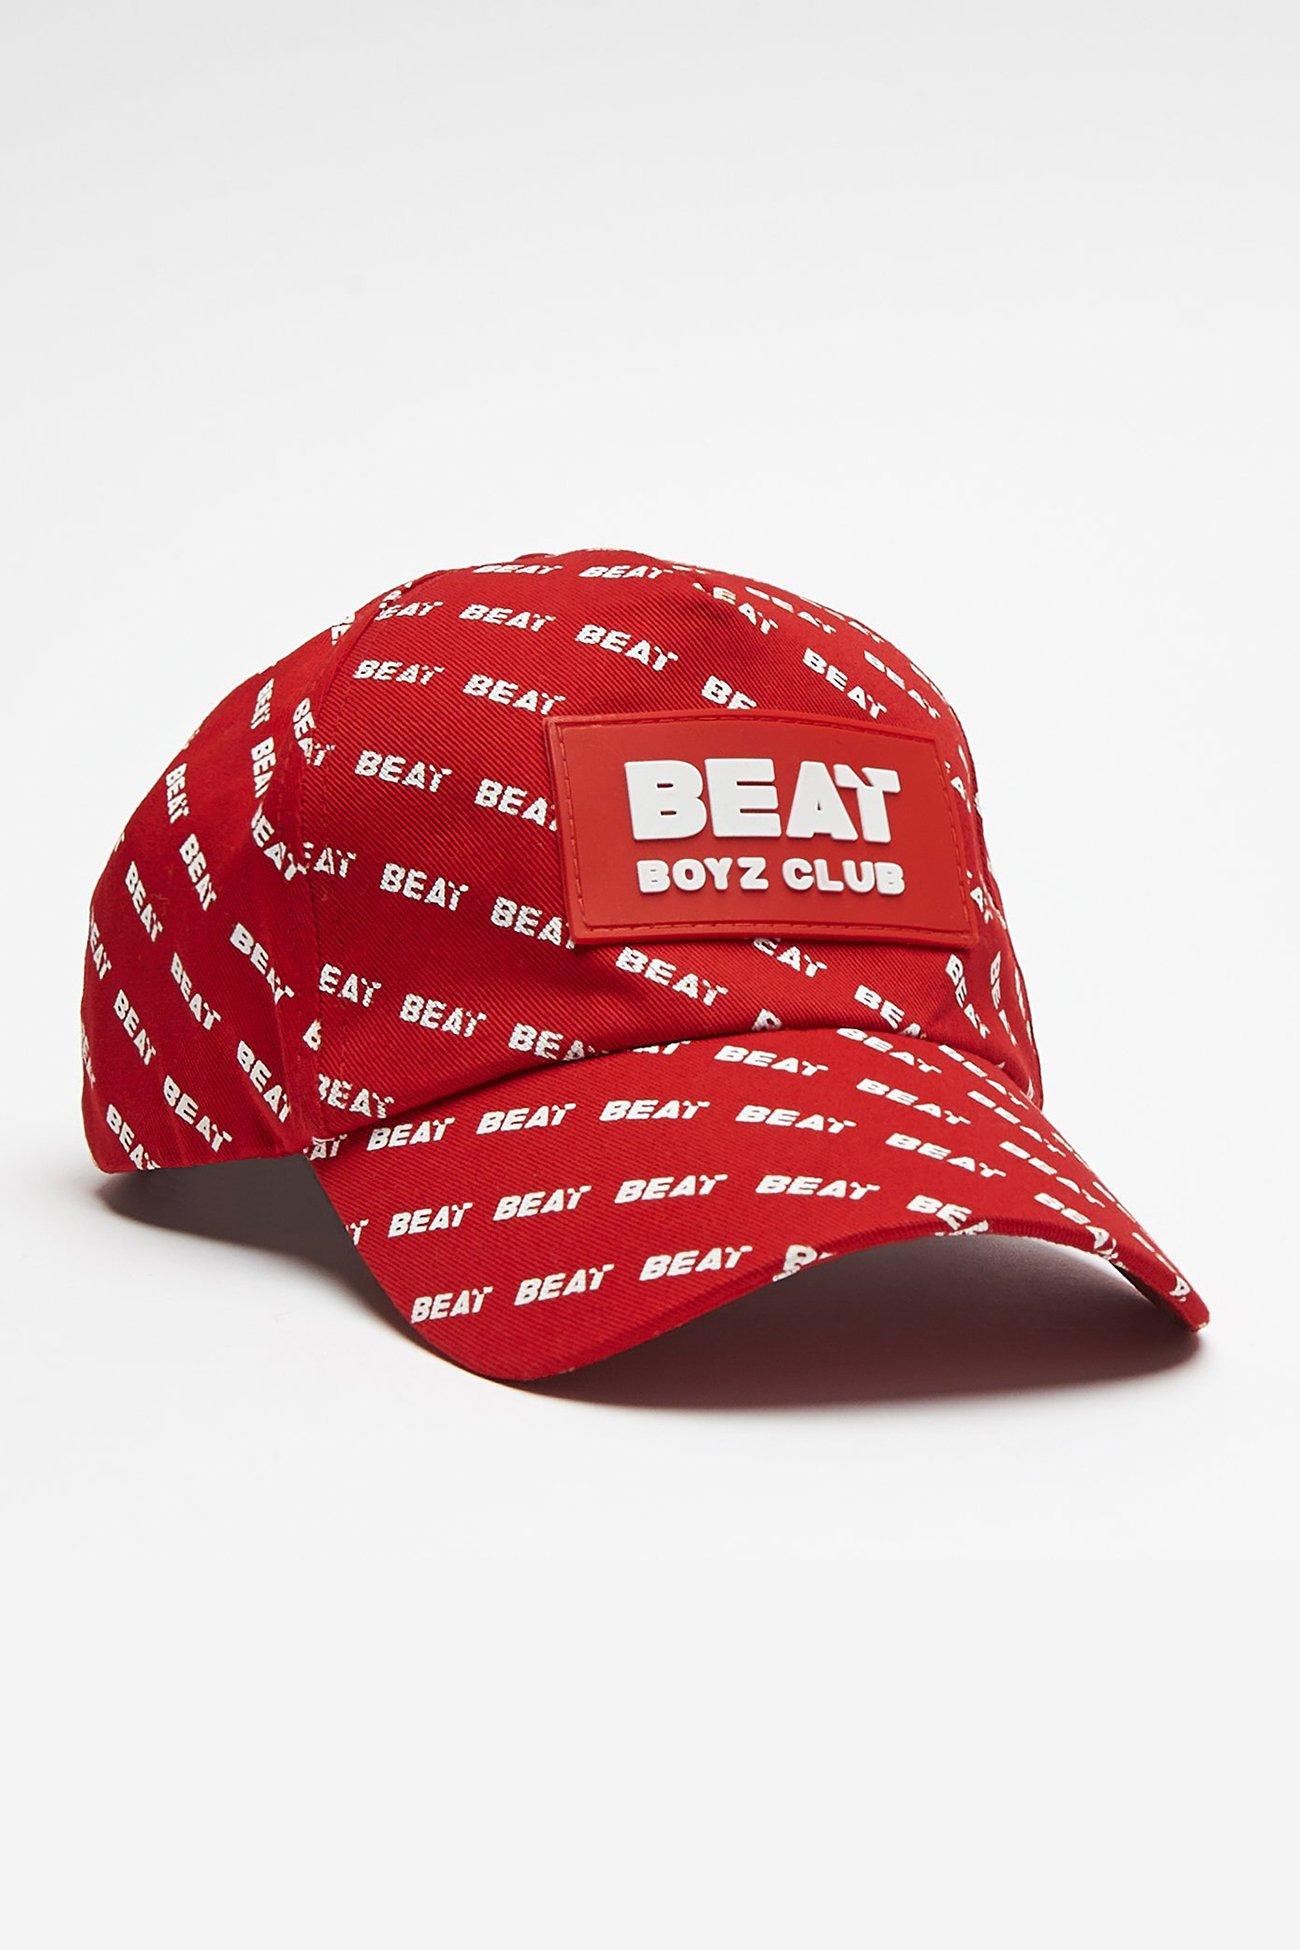 цена Бейсбольная кепка Heelflip Beat Boyz Club, красный